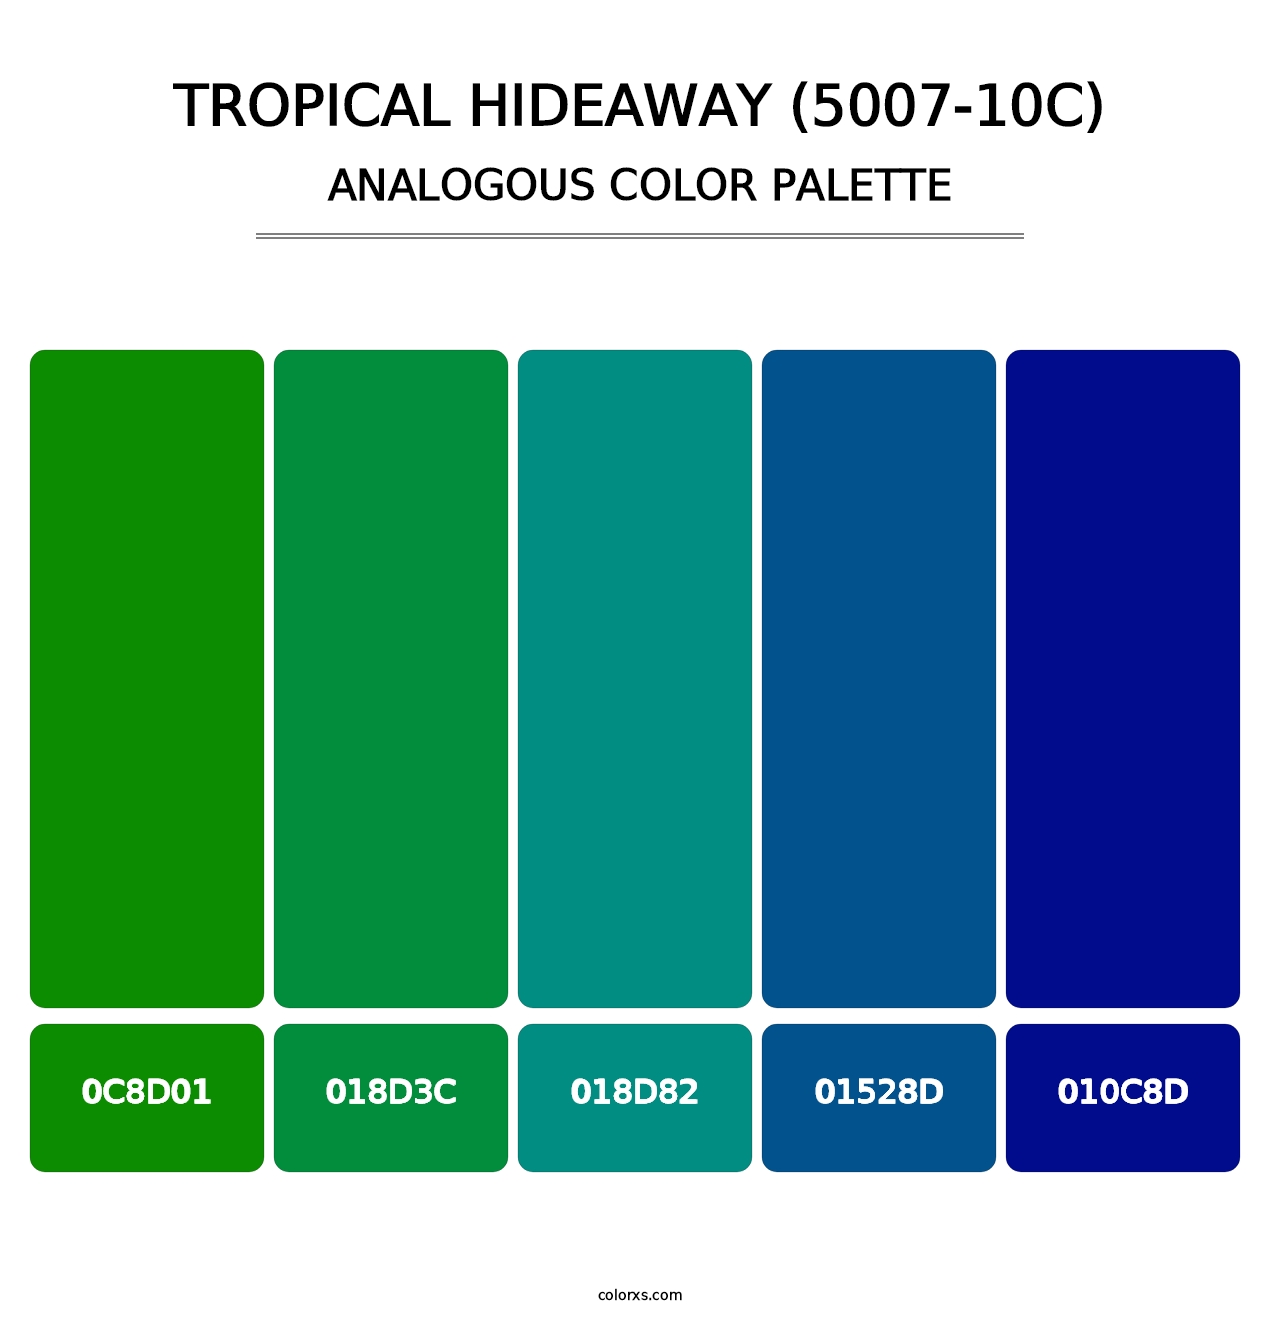 Tropical Hideaway (5007-10C) - Analogous Color Palette